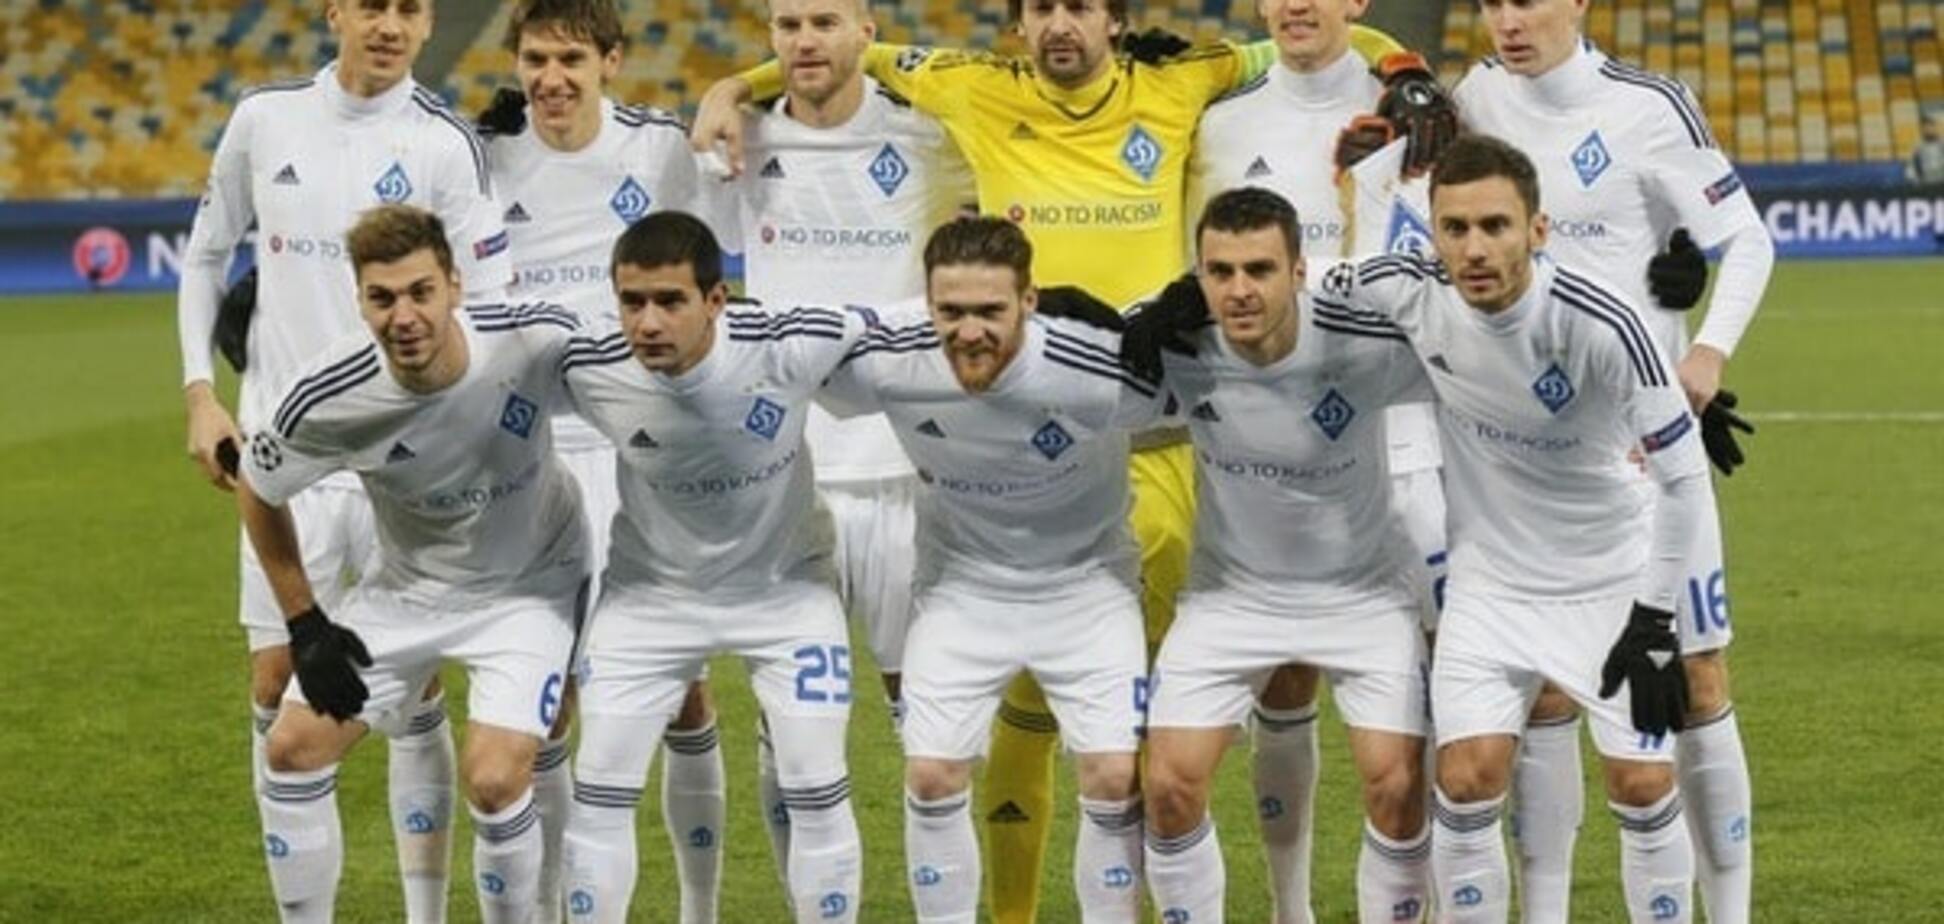 'Не балувало уболівальників': УЄФА порадував 'Динамо' приємною новиною